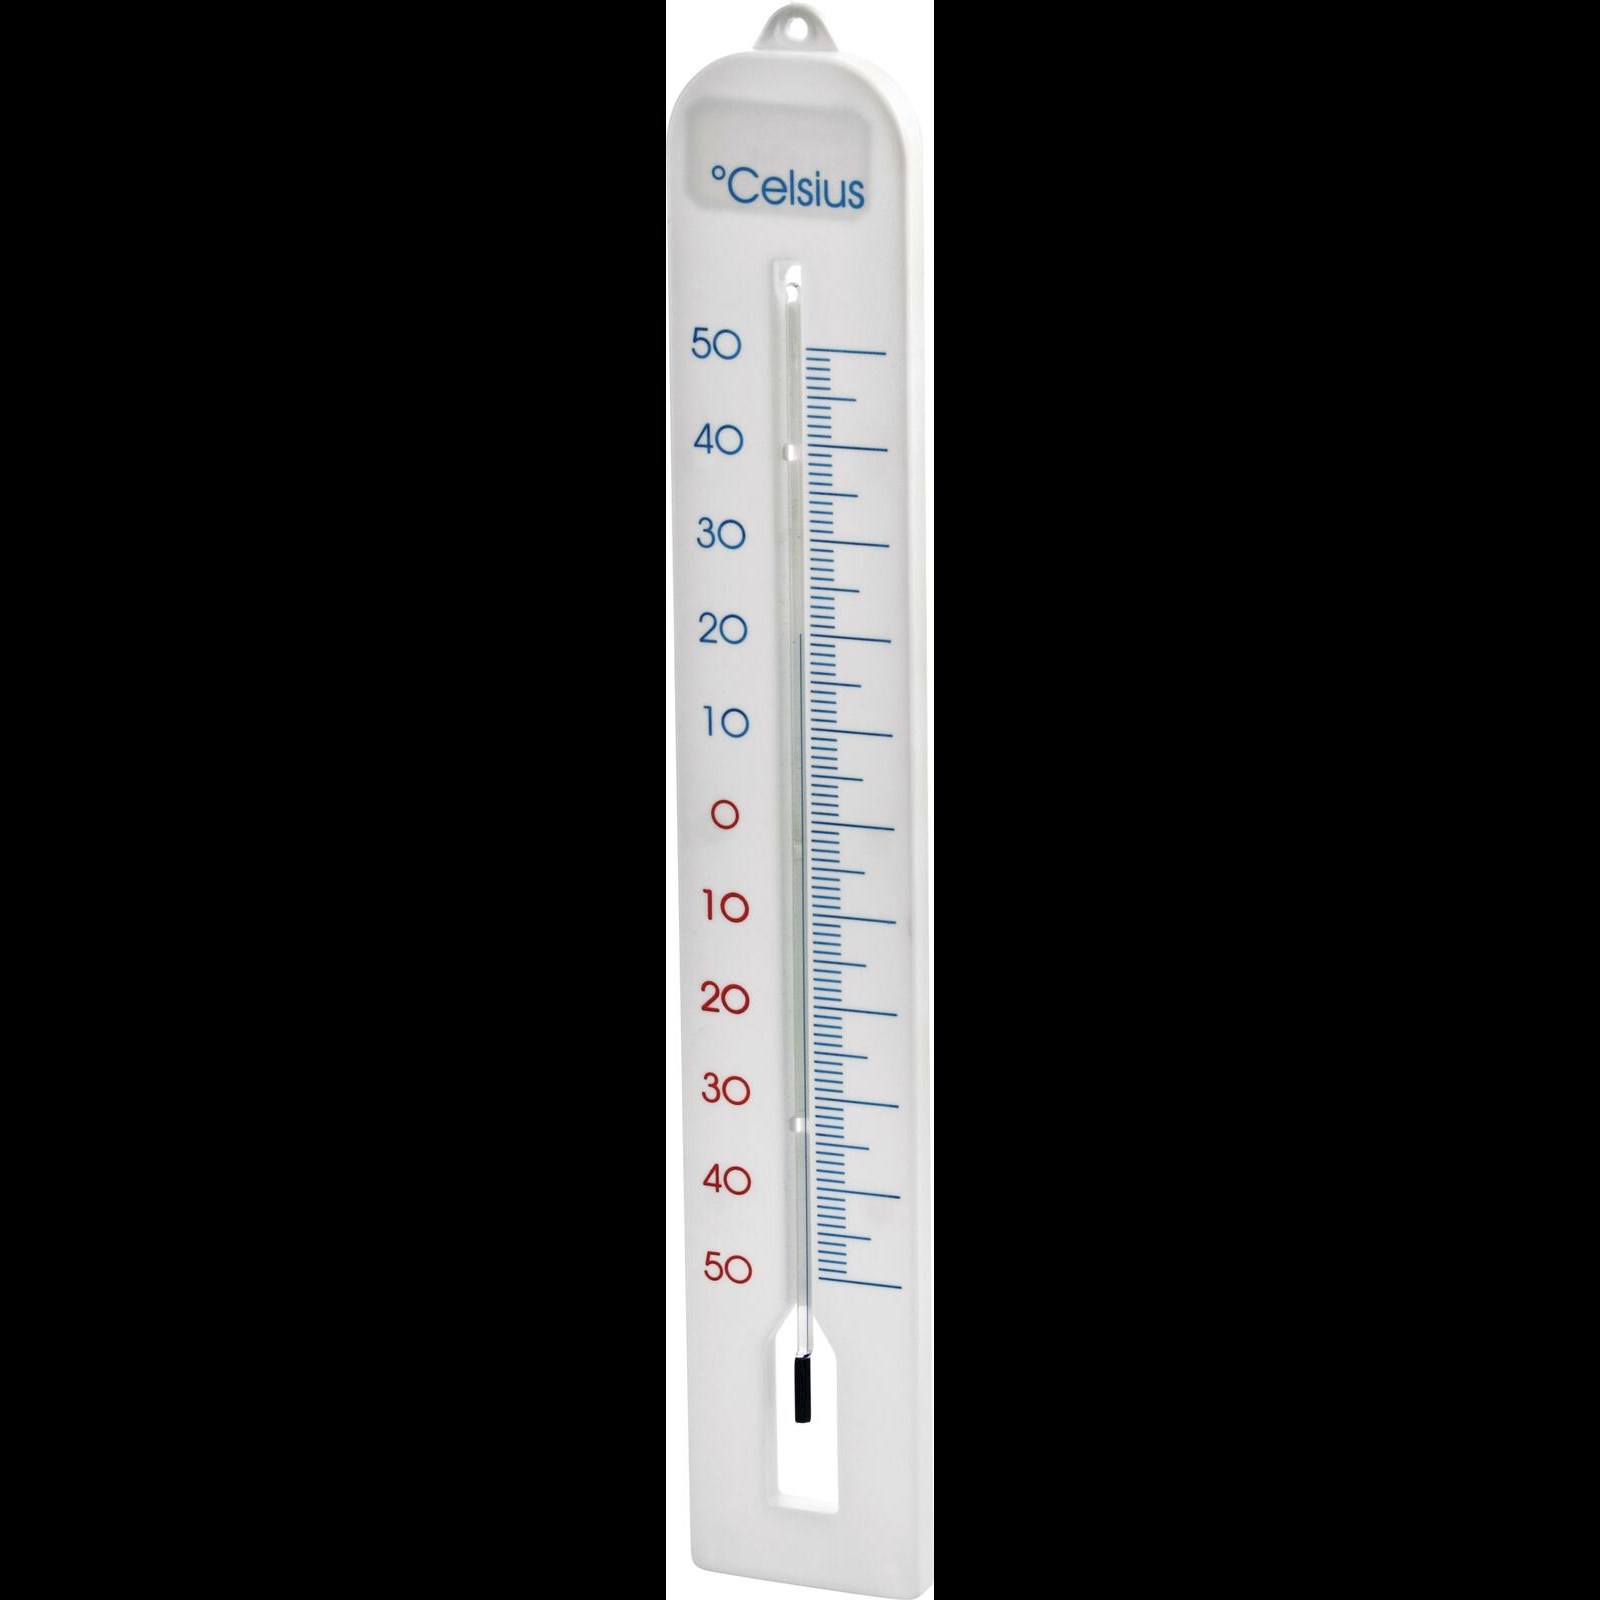 Thermomètre extérieur 40 cm Acheter - Thermomètres - LANDI